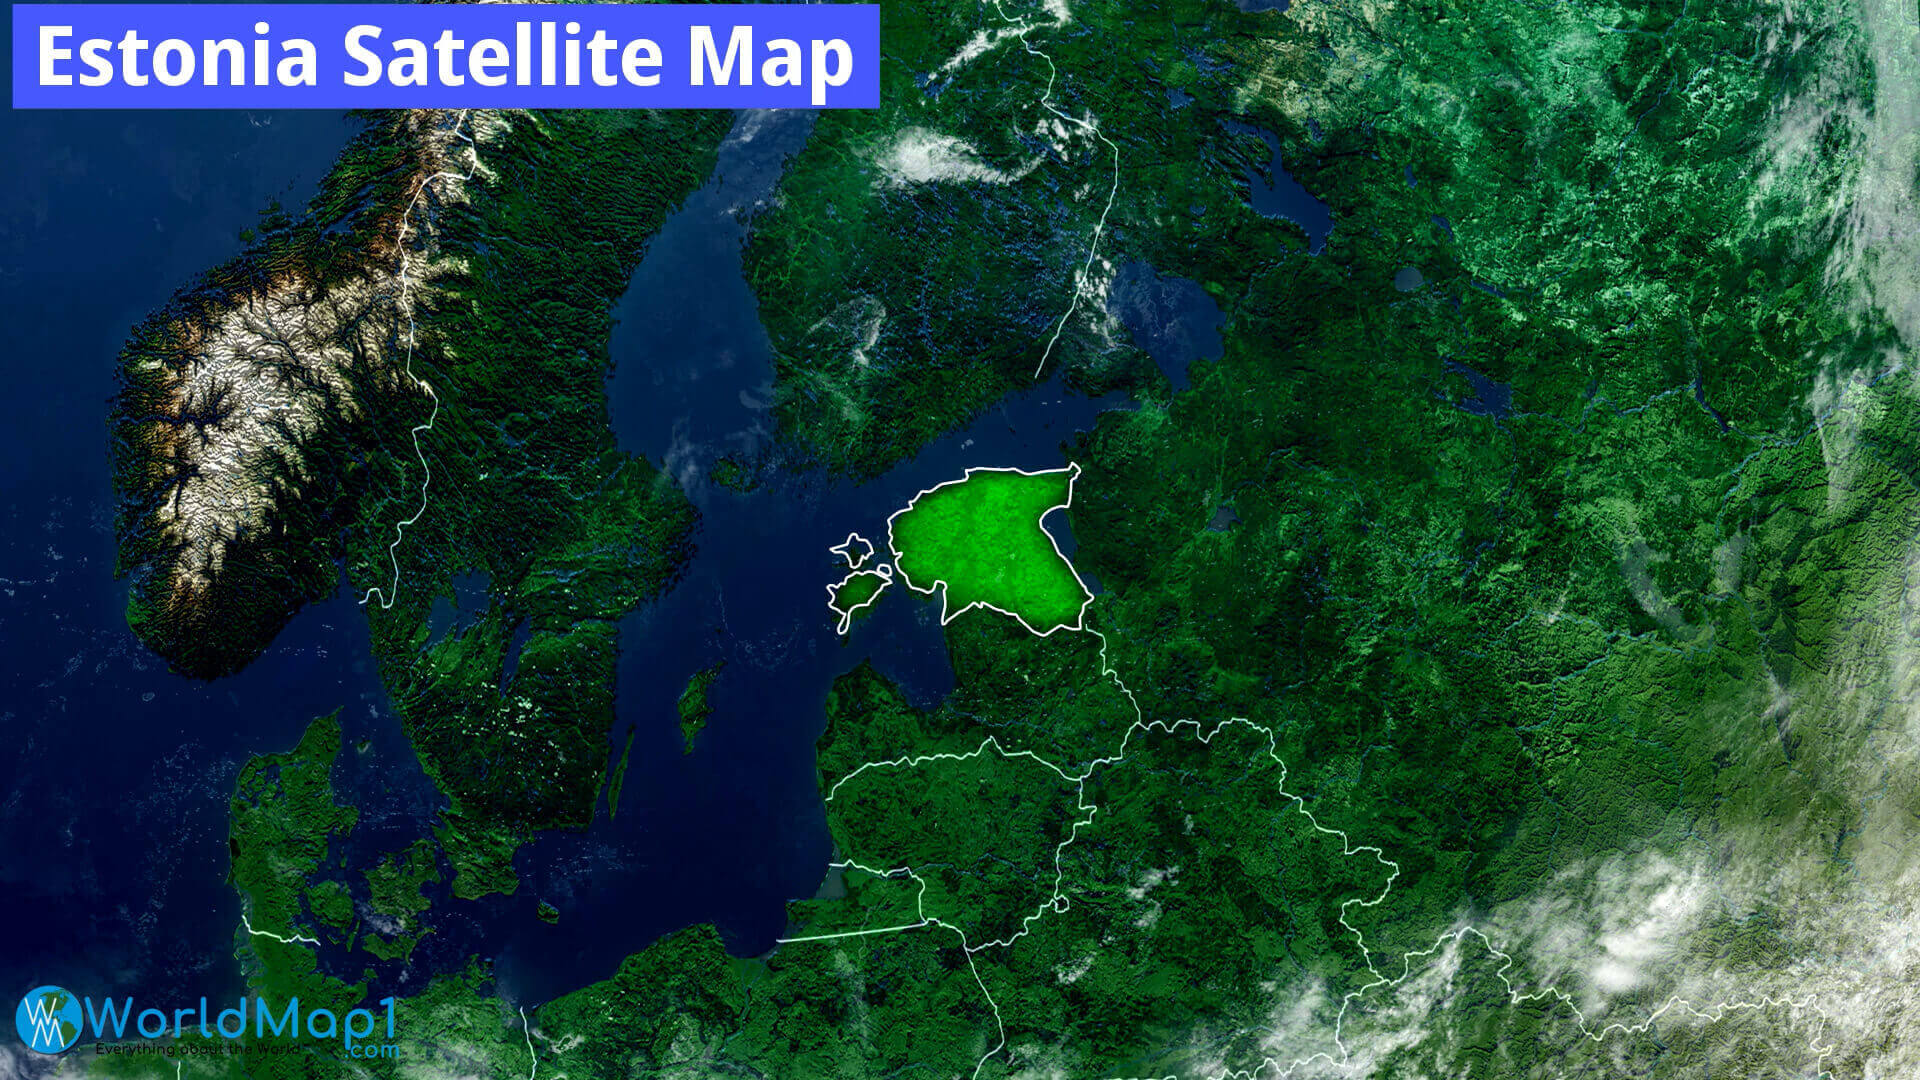 Estonia Satellite Map